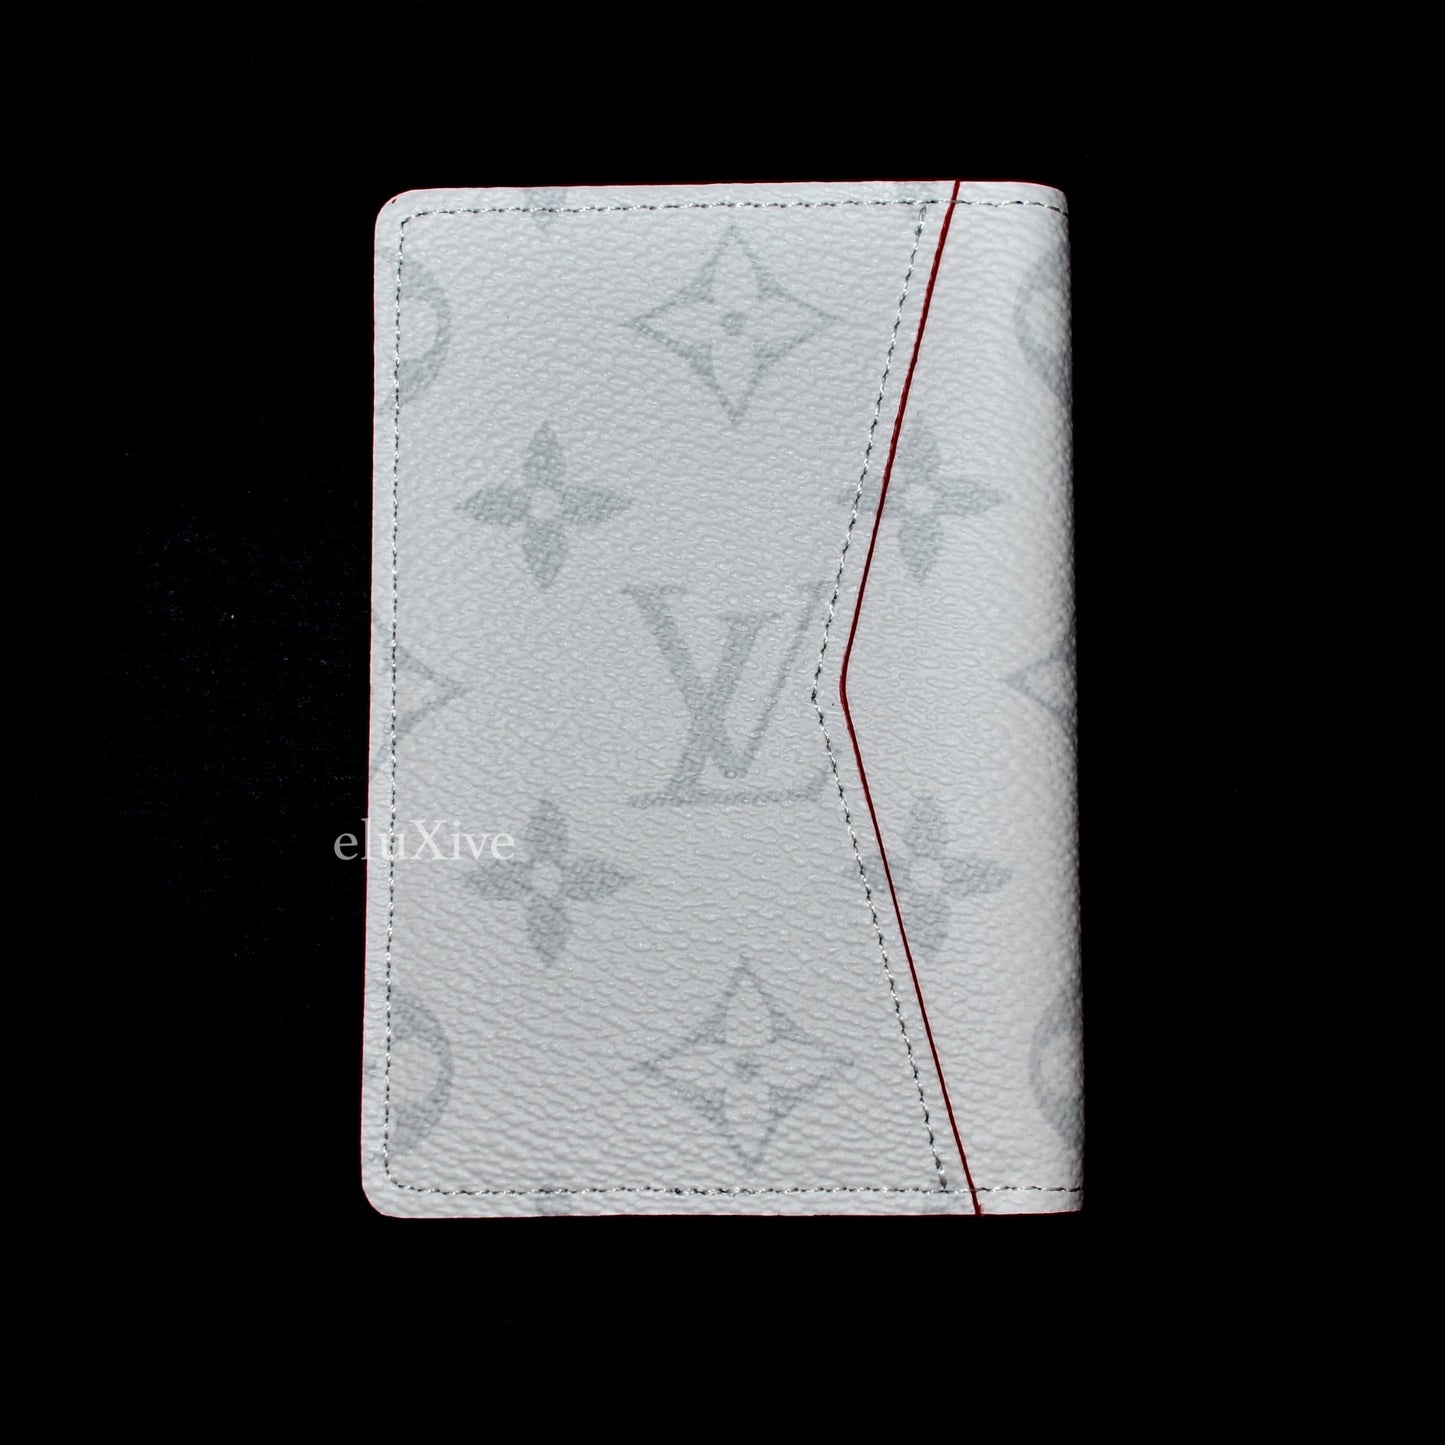 Louis Vuitton x NBA - Monogram Pocket Organizer Wallet (White) – eluXive